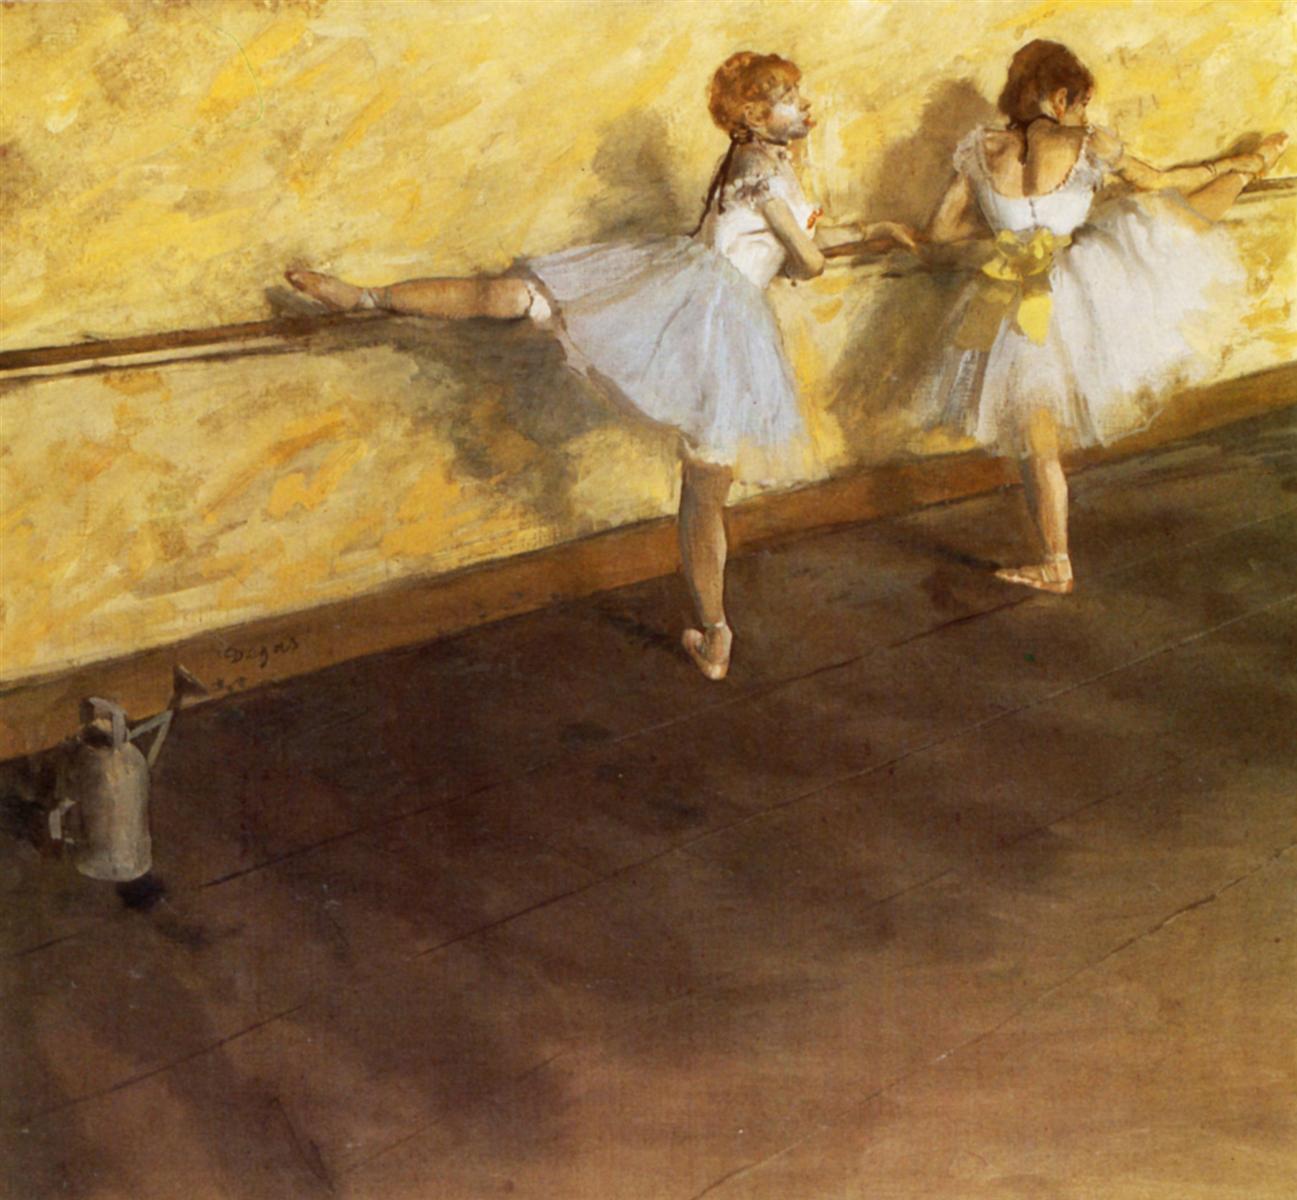 Edgar+Degas-1834-1917 (429).jpg